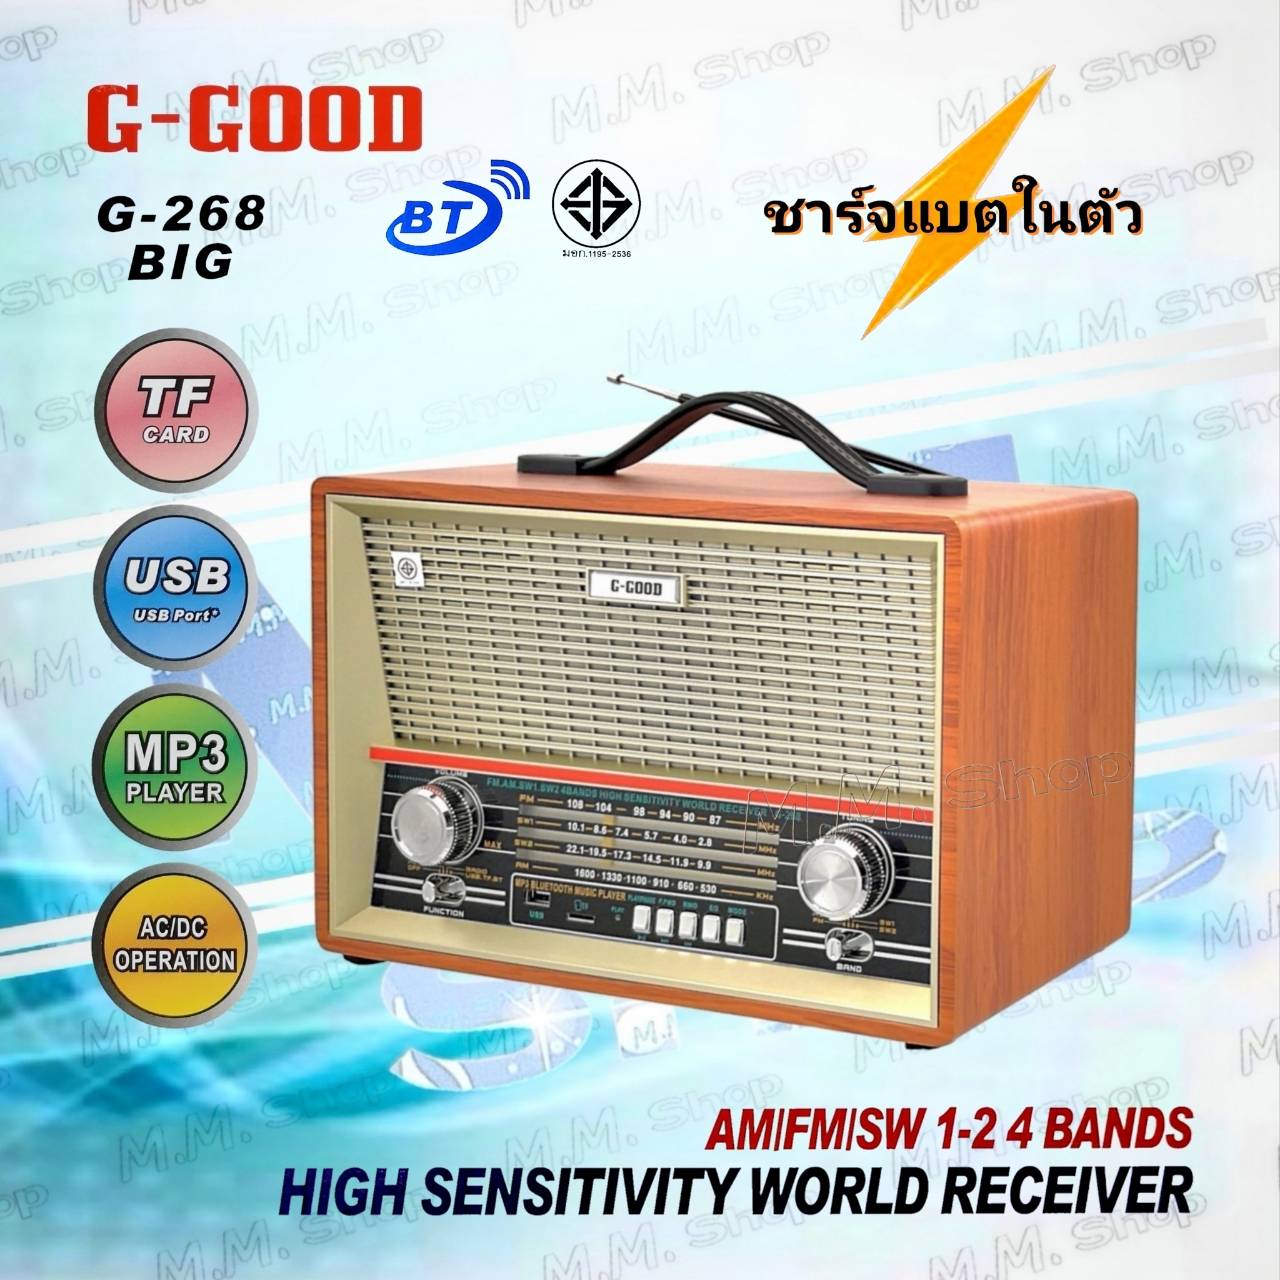 G-GOOD วิทยุ บลูทูธ/USB/ AM/FM/SW1-2 4 BANDS รุ่น G-268 BIG